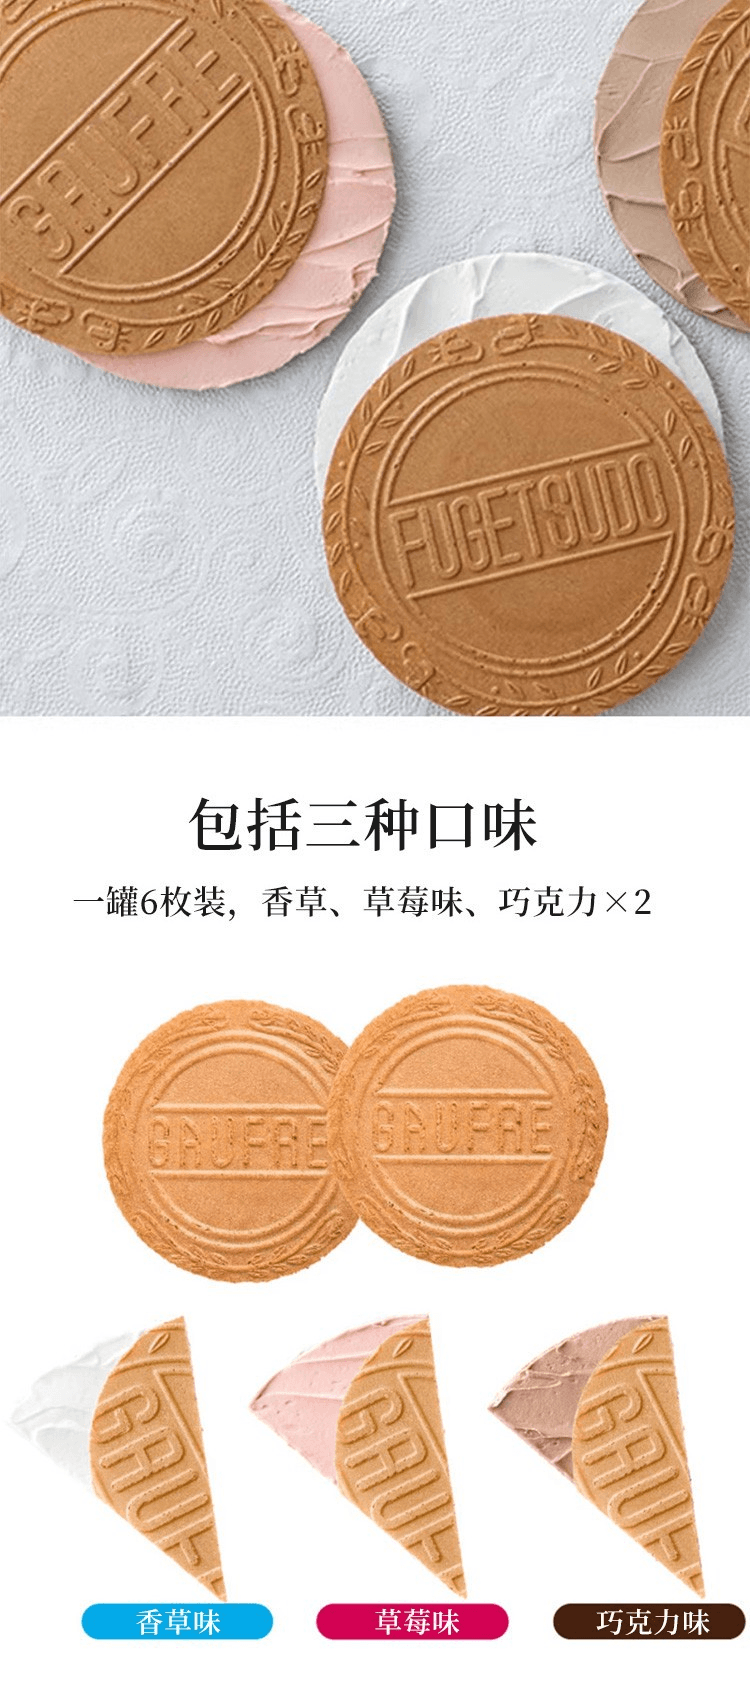 【日本直邮】神户风月堂 CHIIKAWA限定 双层脆薄饼 乌萨奇 6片(3片x2袋)